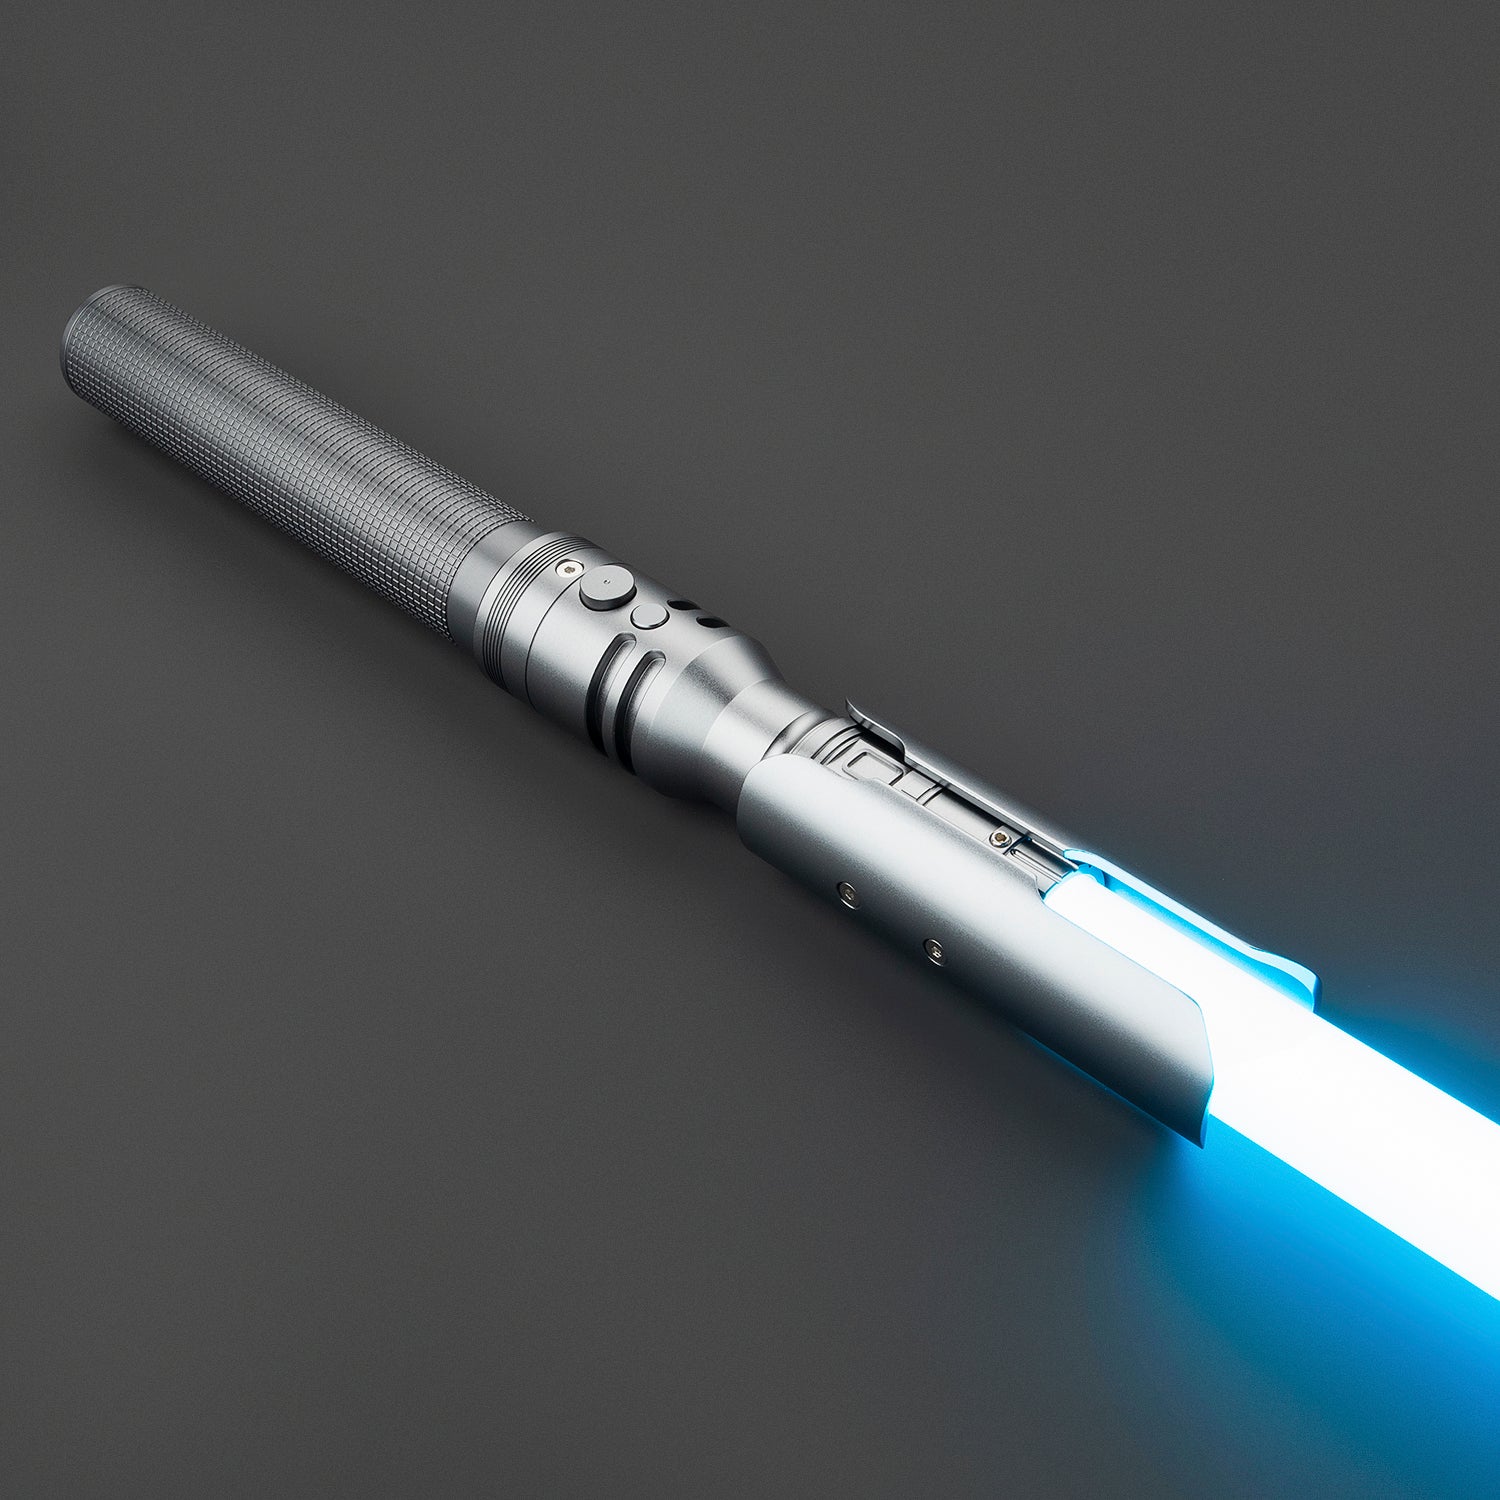 Cal Jedi Fallen Order einfarbige graue gerader Schnitt Lichtschwert Replik